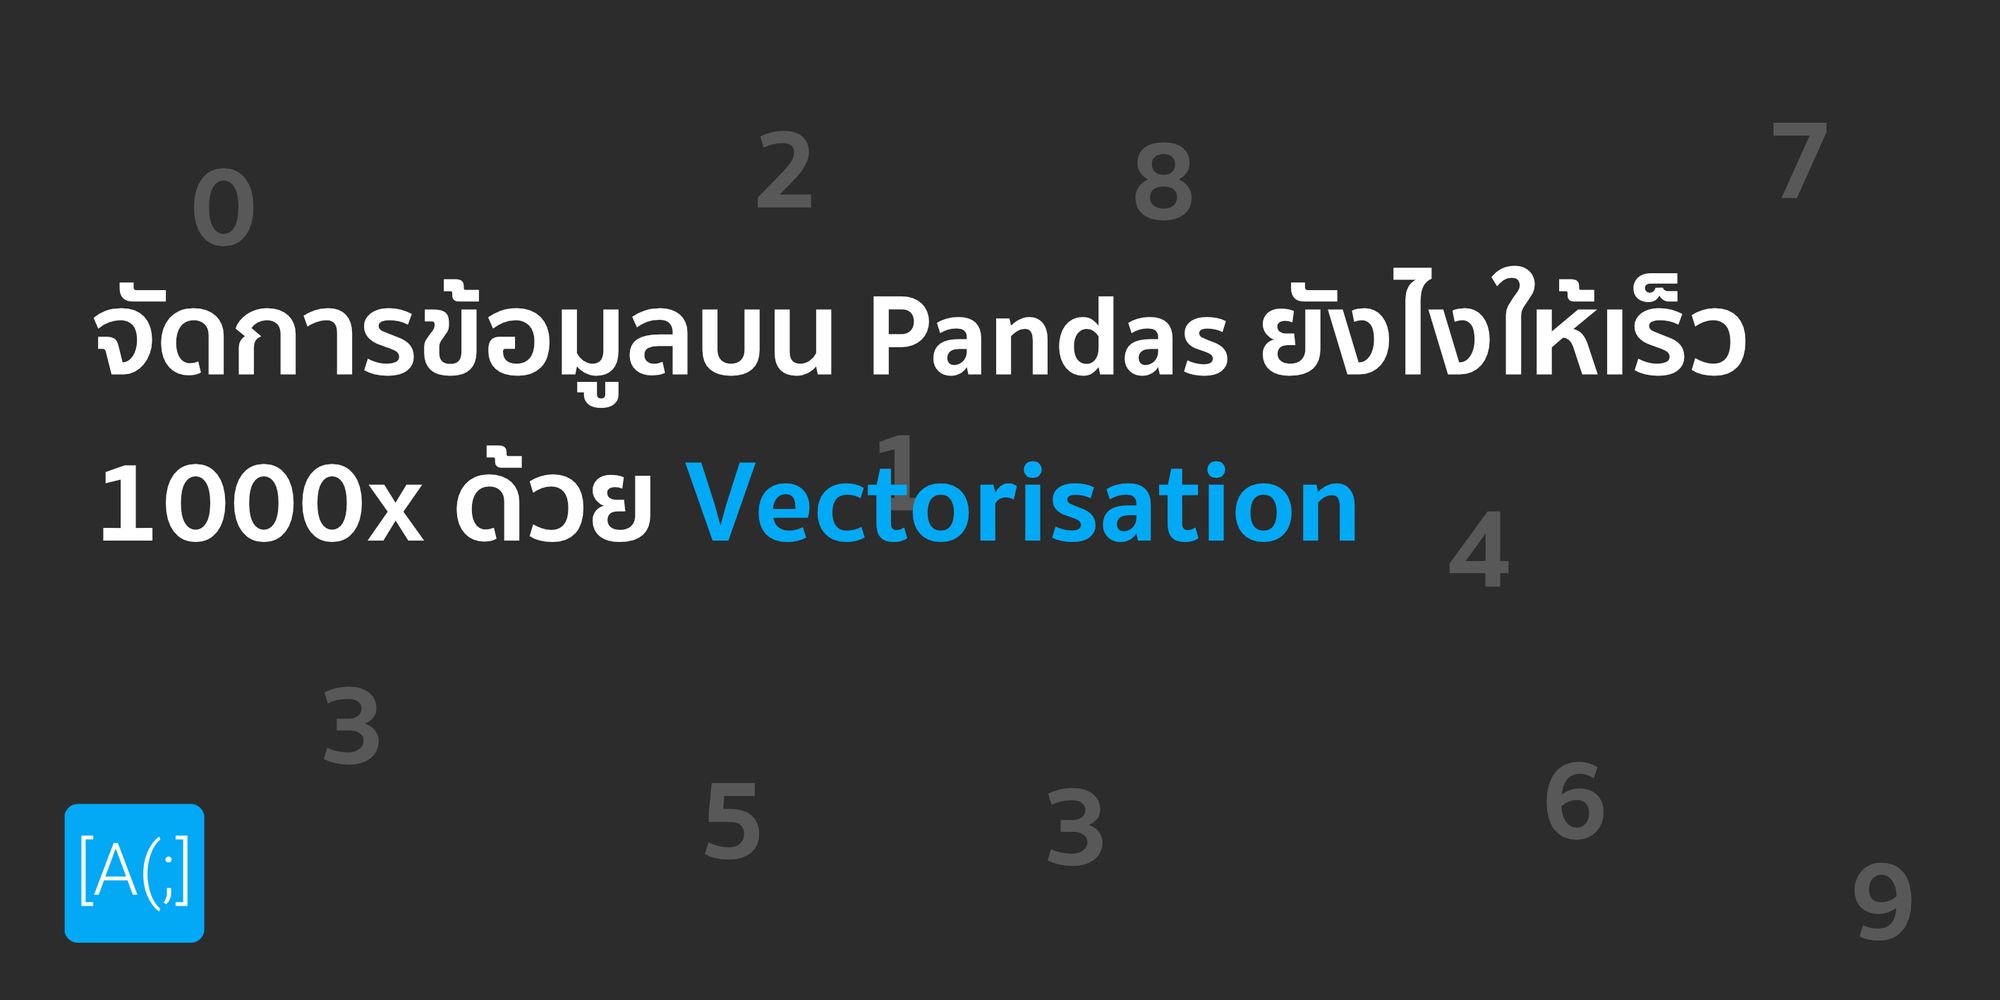 จัดการข้อมูลบน Pandas ยังไงให้เร็ว 1000x ด้วย Vectorisation